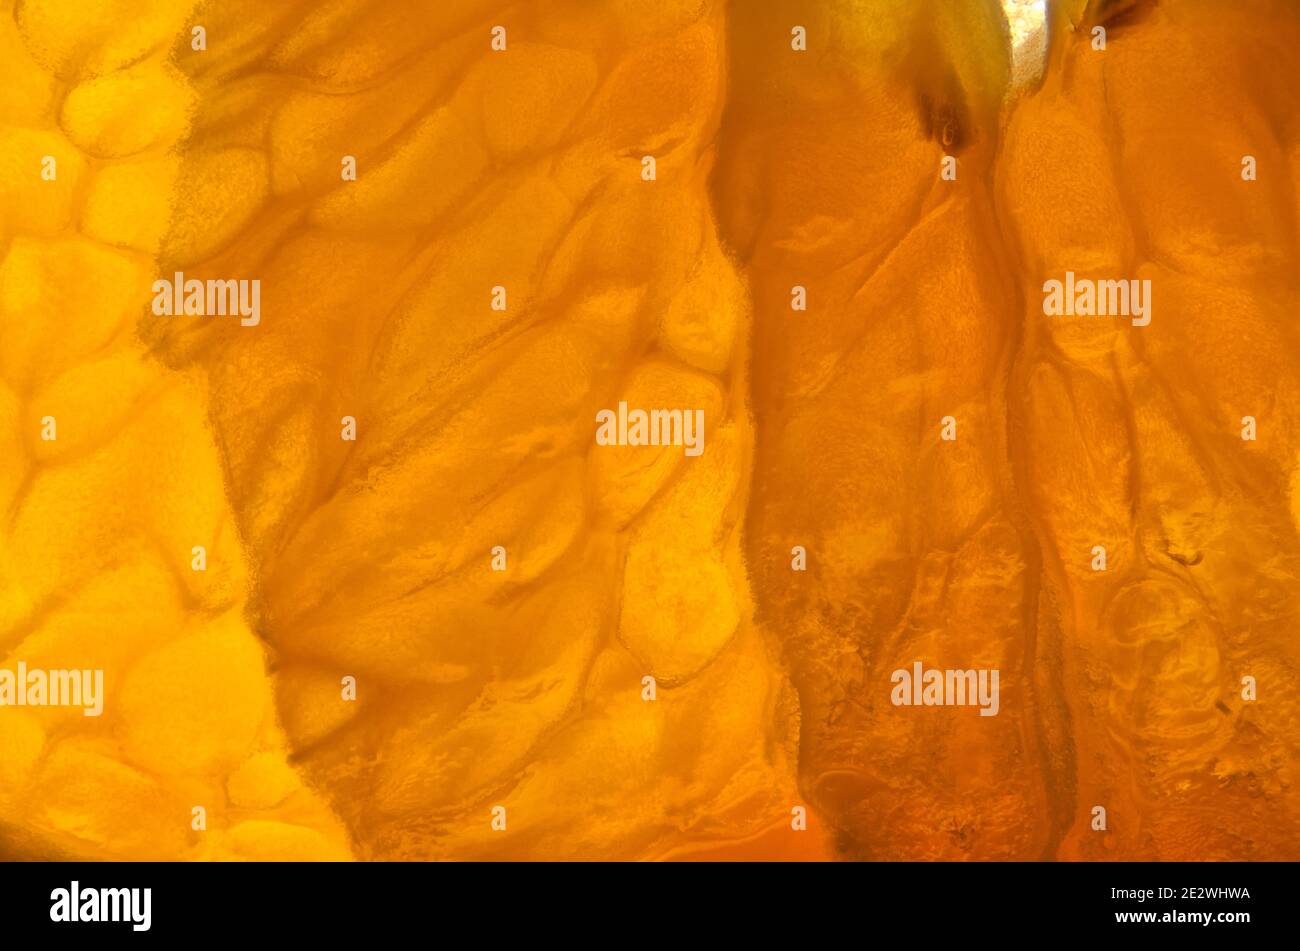 Scheibe einer Orange (Citrus sinensis) fotografiert auf einem Leuchttisch, um von unten zu beleuchten, besser die inneren Strukturen der Scheiben und zu zeigen Stockfoto